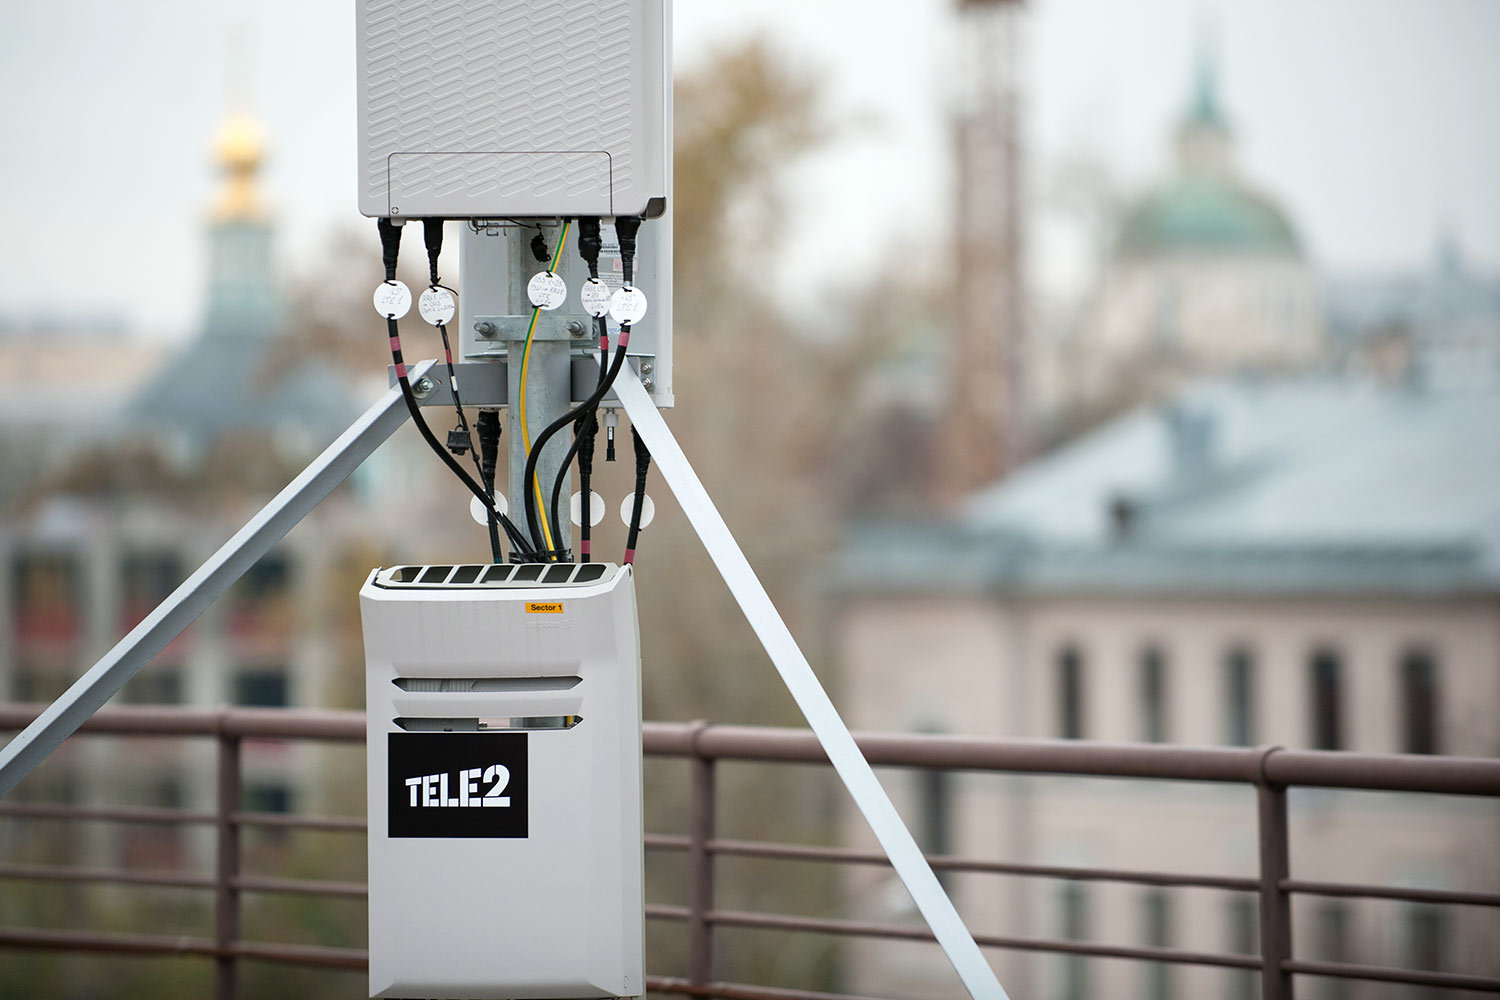 Tele2 оптимизировала сеть в Пензенской области за счет увеличения высоты подвесов